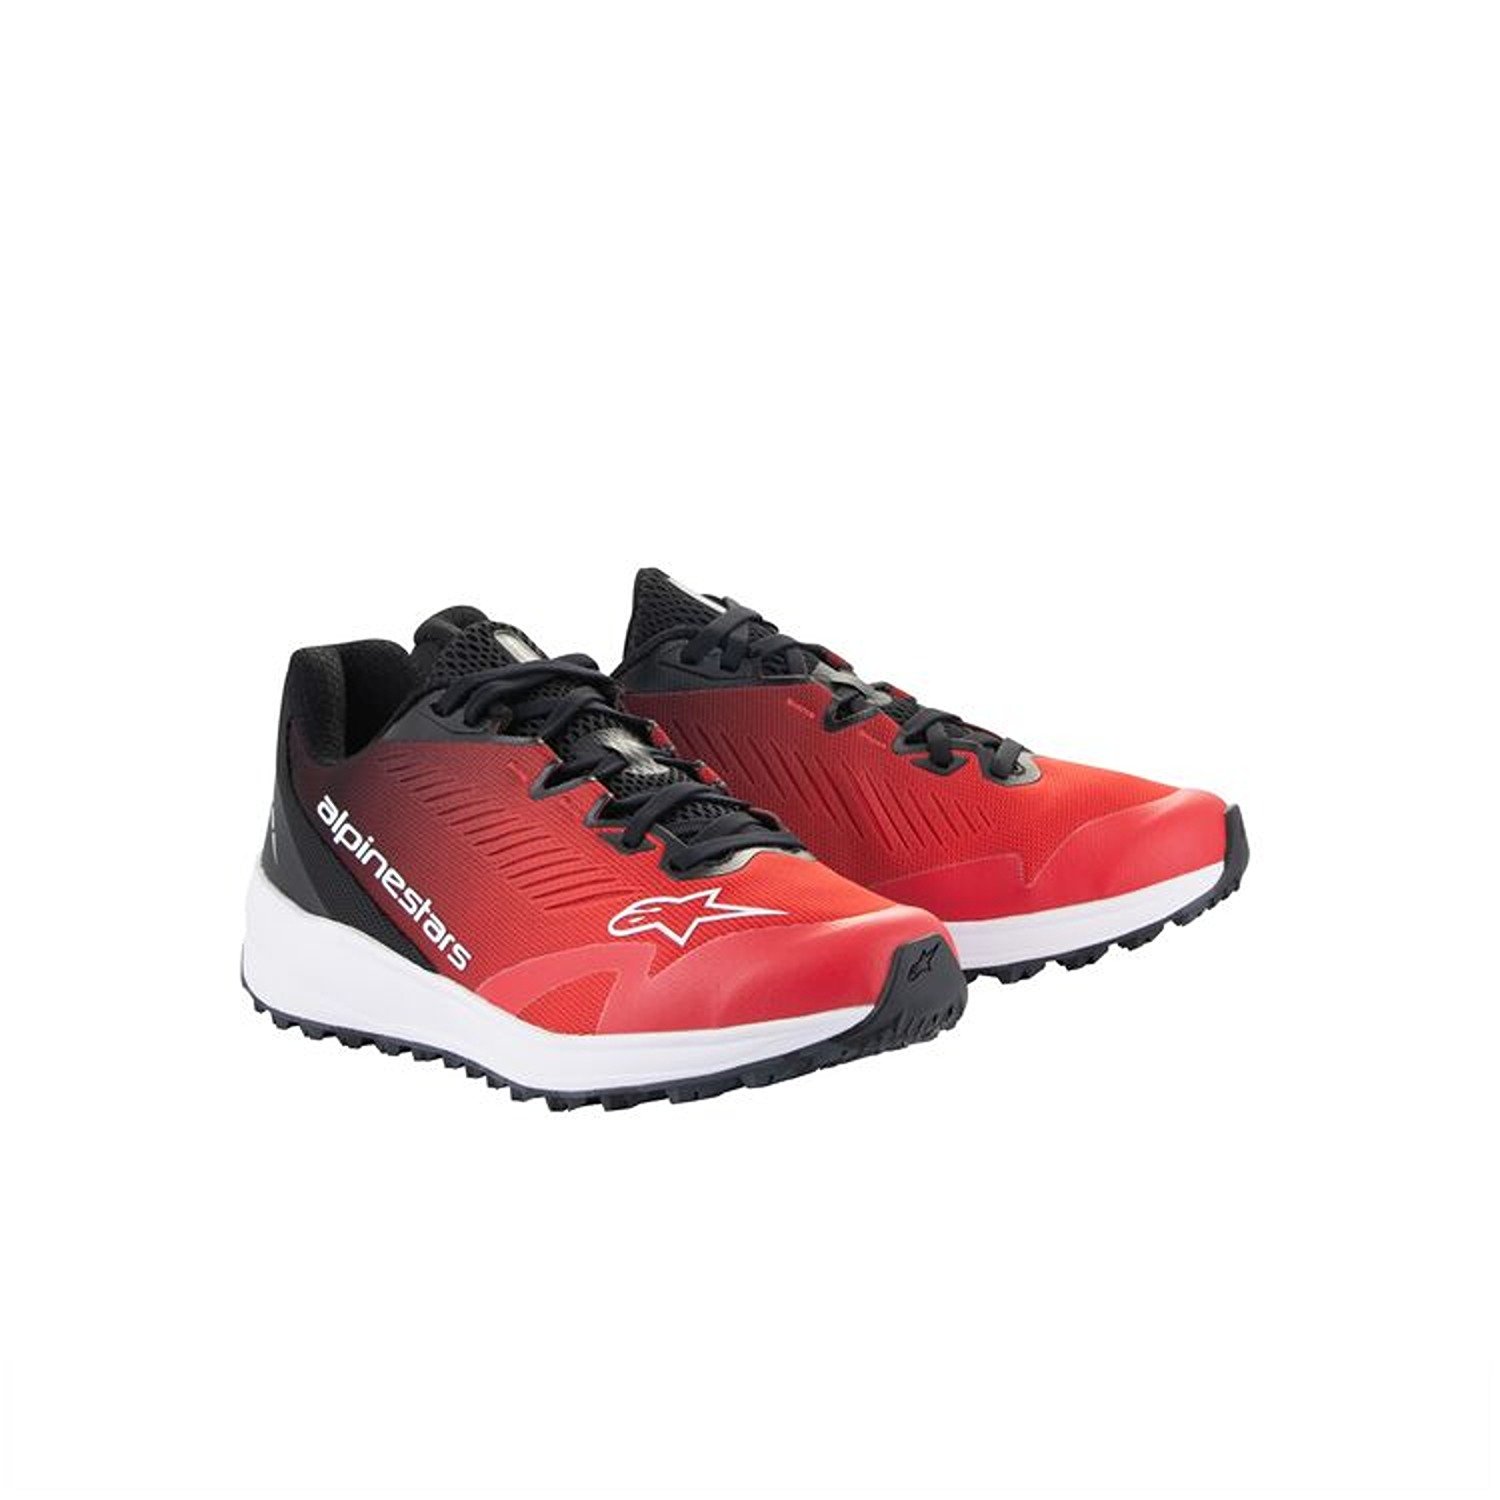 Image of Alpinestars Meta Road V2 Shoes Red Black White Größe US 135